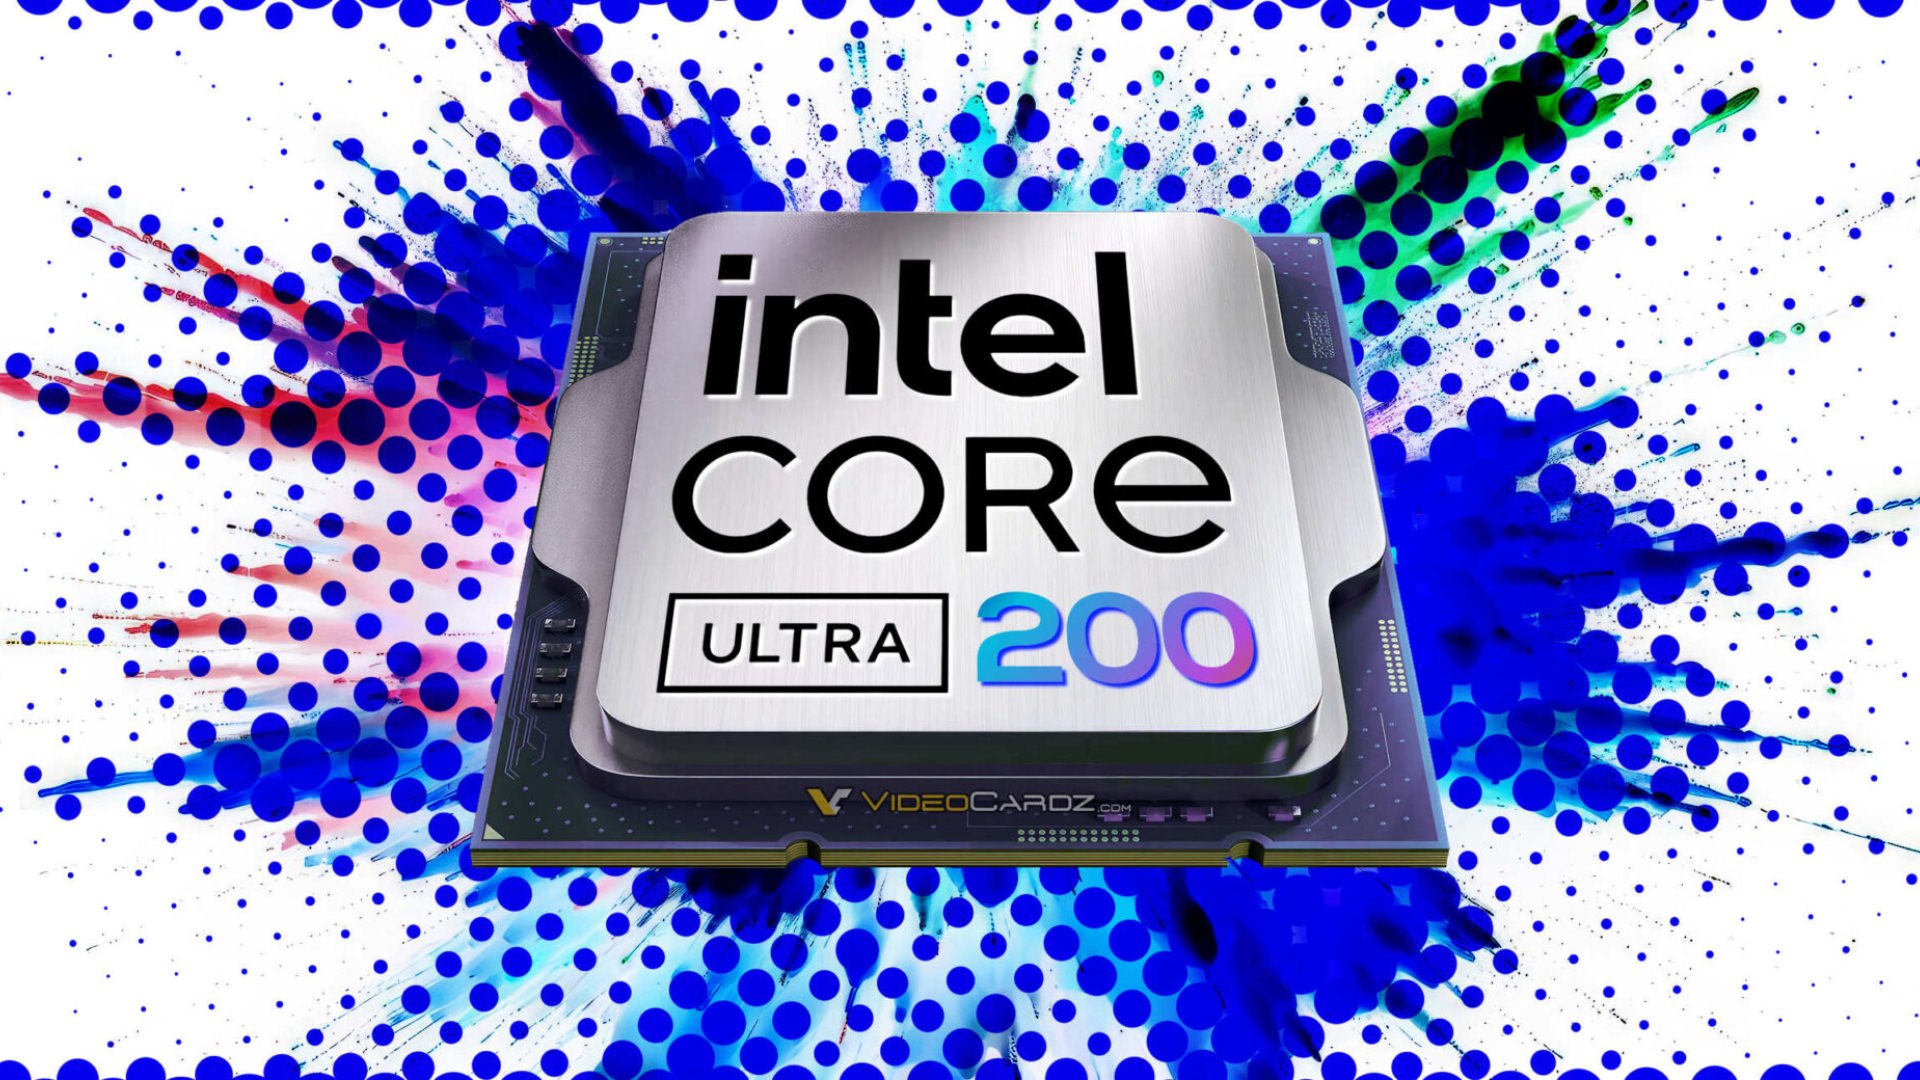 زمان عرضه احتمالی پردازنده های سری Intel Core Ultra 200 اعلام شد